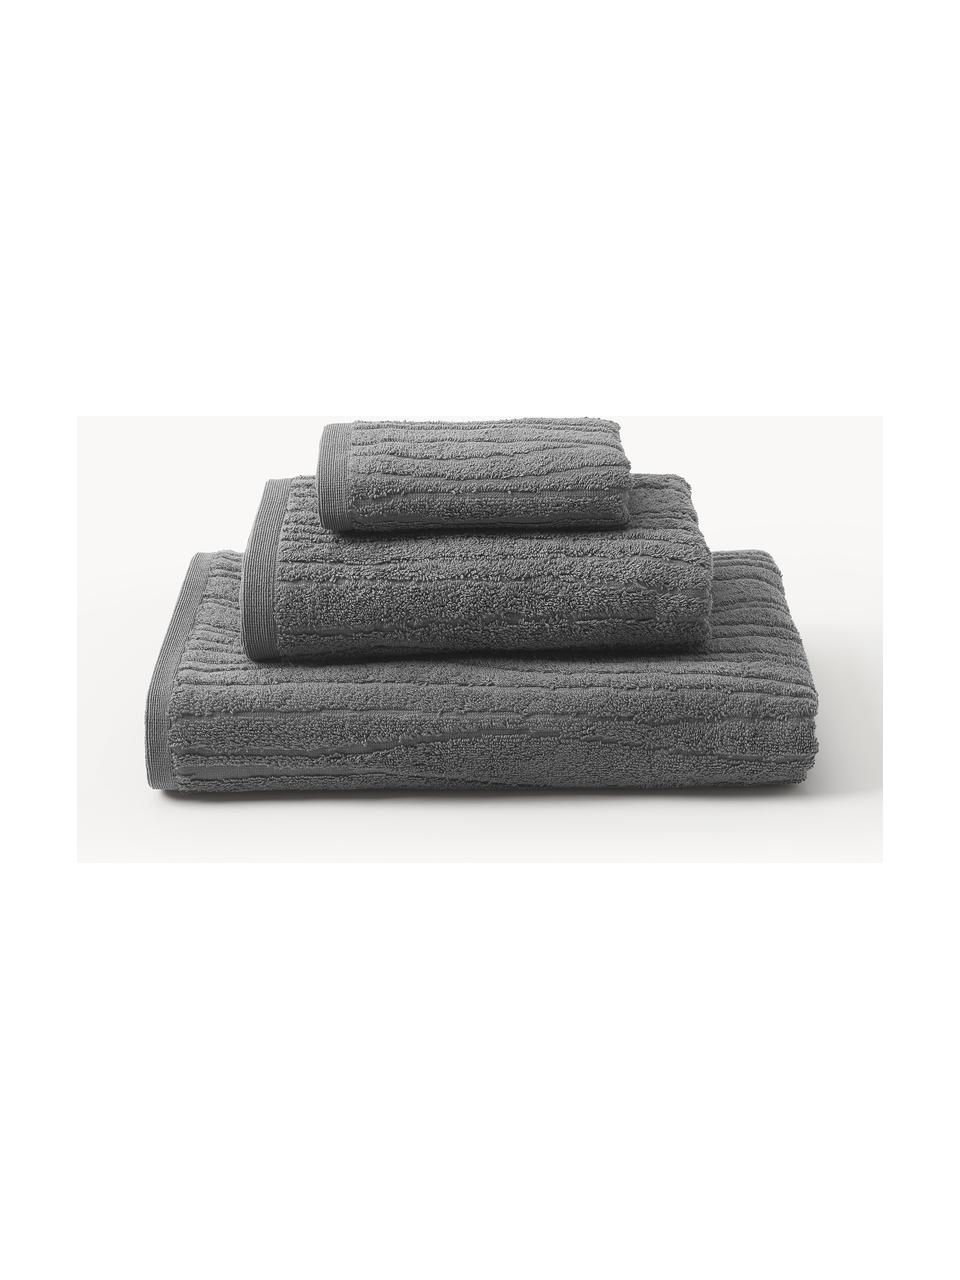 Set de toallas Audrina, tamaños diferentes, Gris oscuro, Set de 3 (toalla tocador, toalla lavabo y toalla ducha)